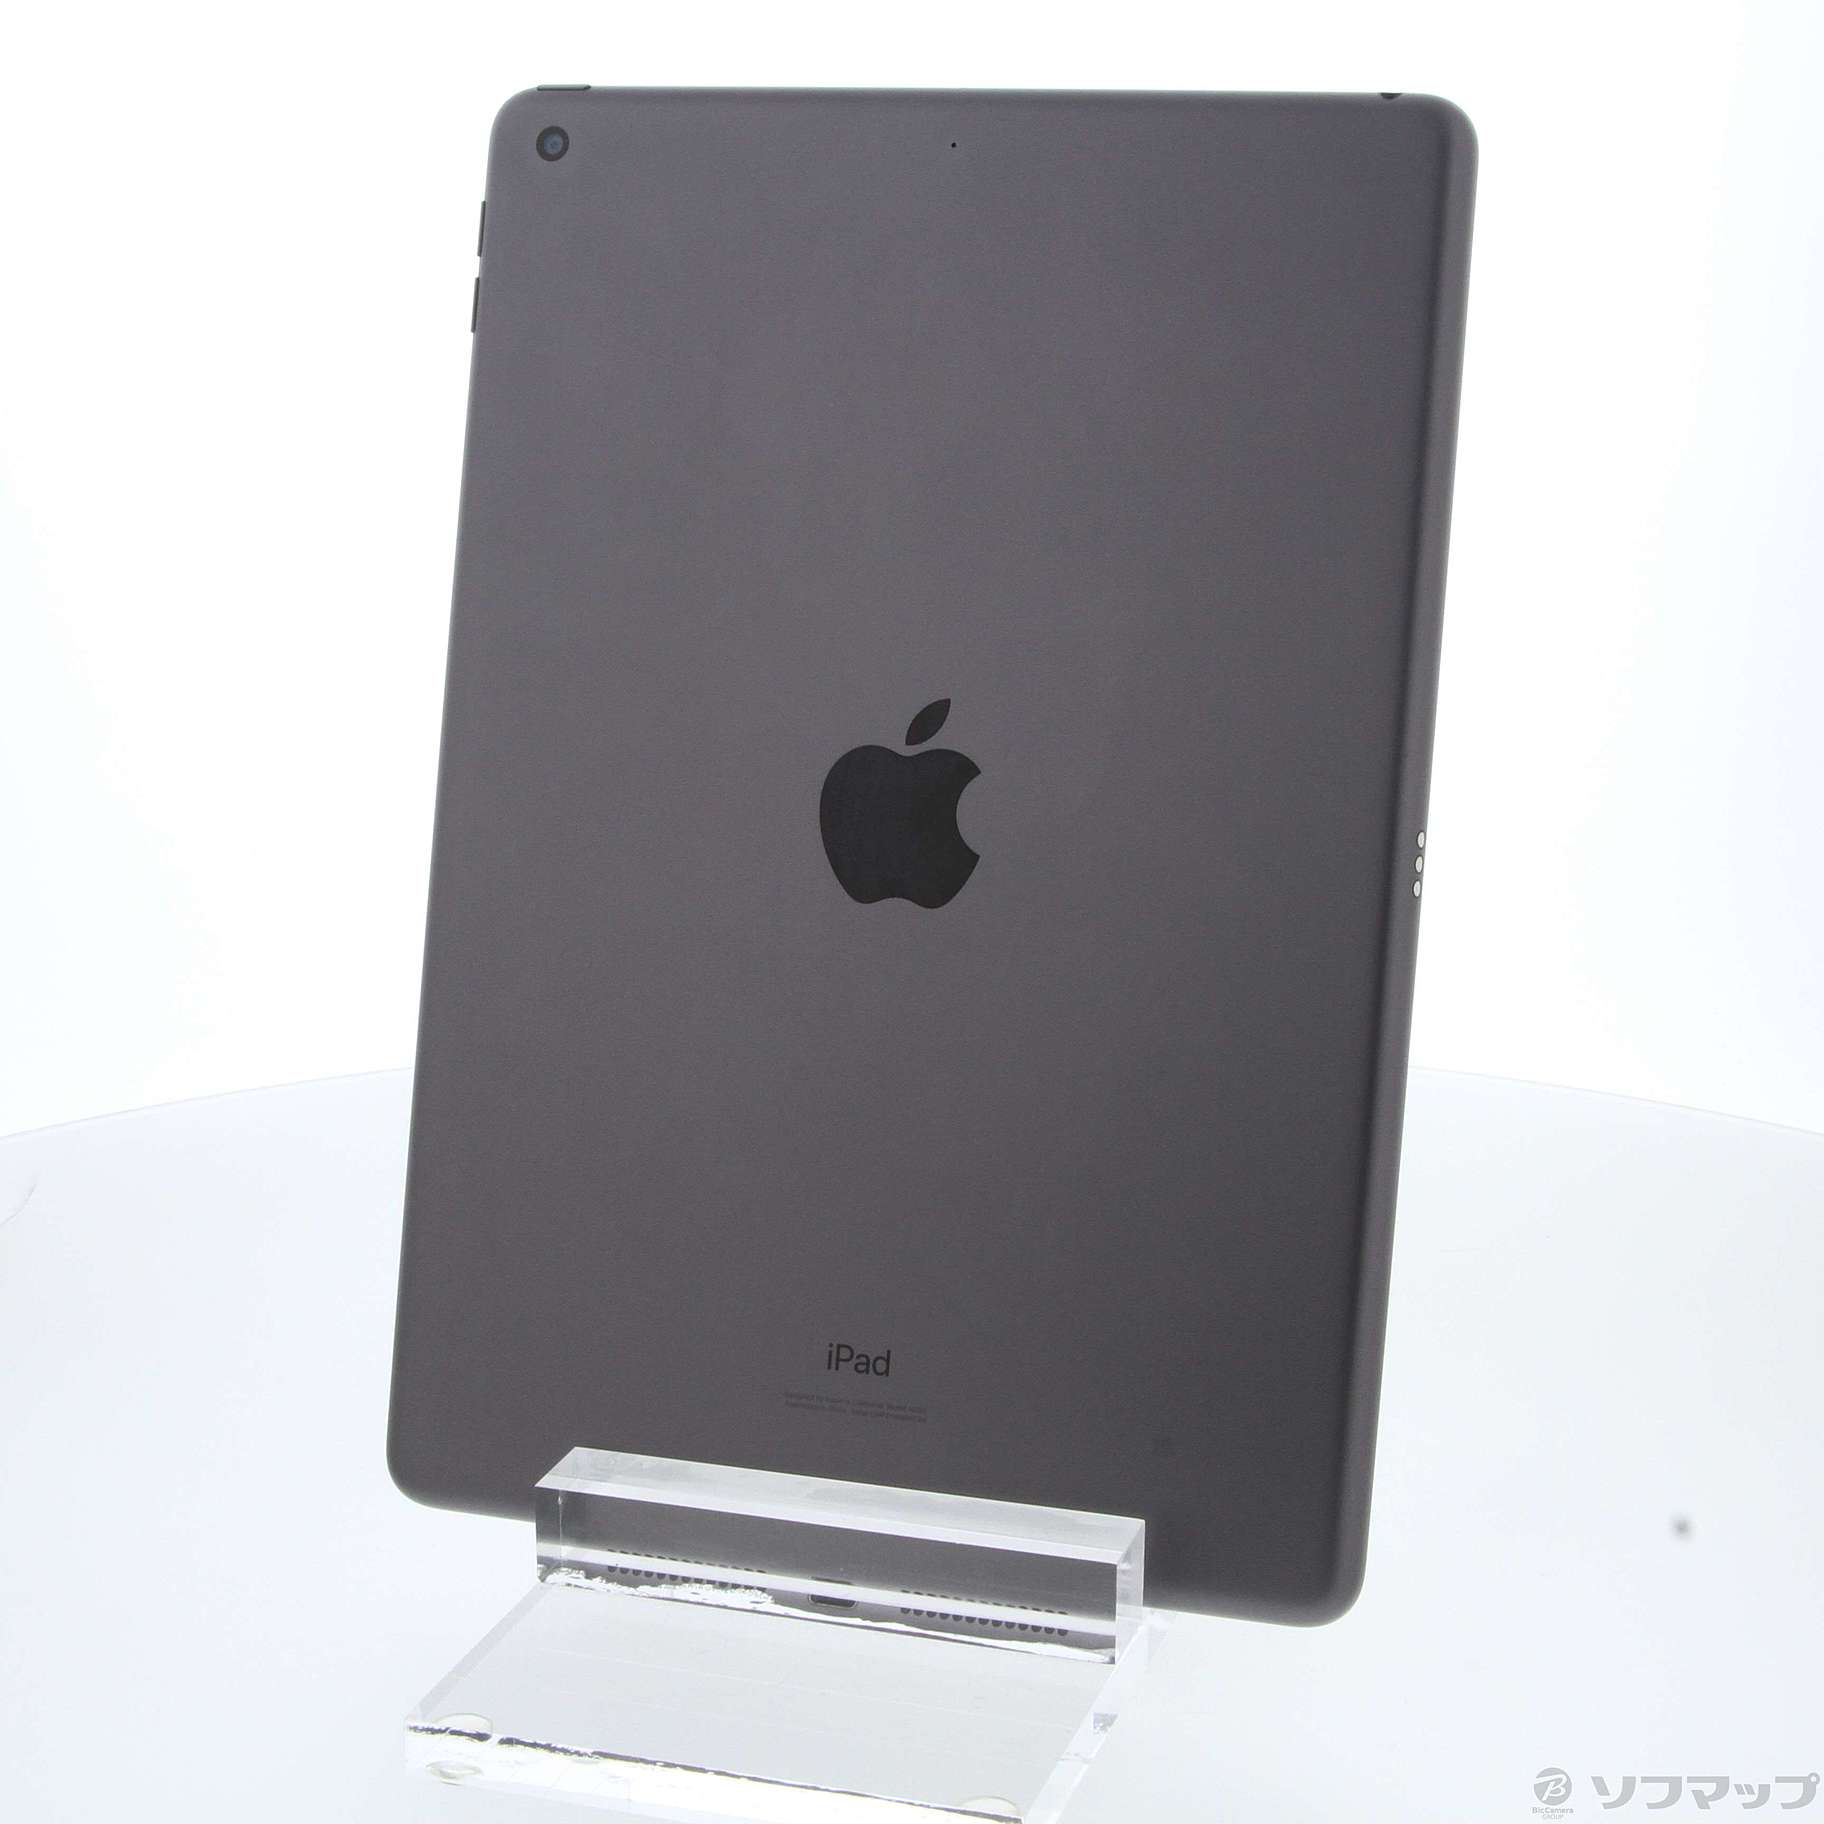 (中古)Apple iPad 第7世代 32GB スペースグレイ MW742J/A Wi-Fi(251-ud)